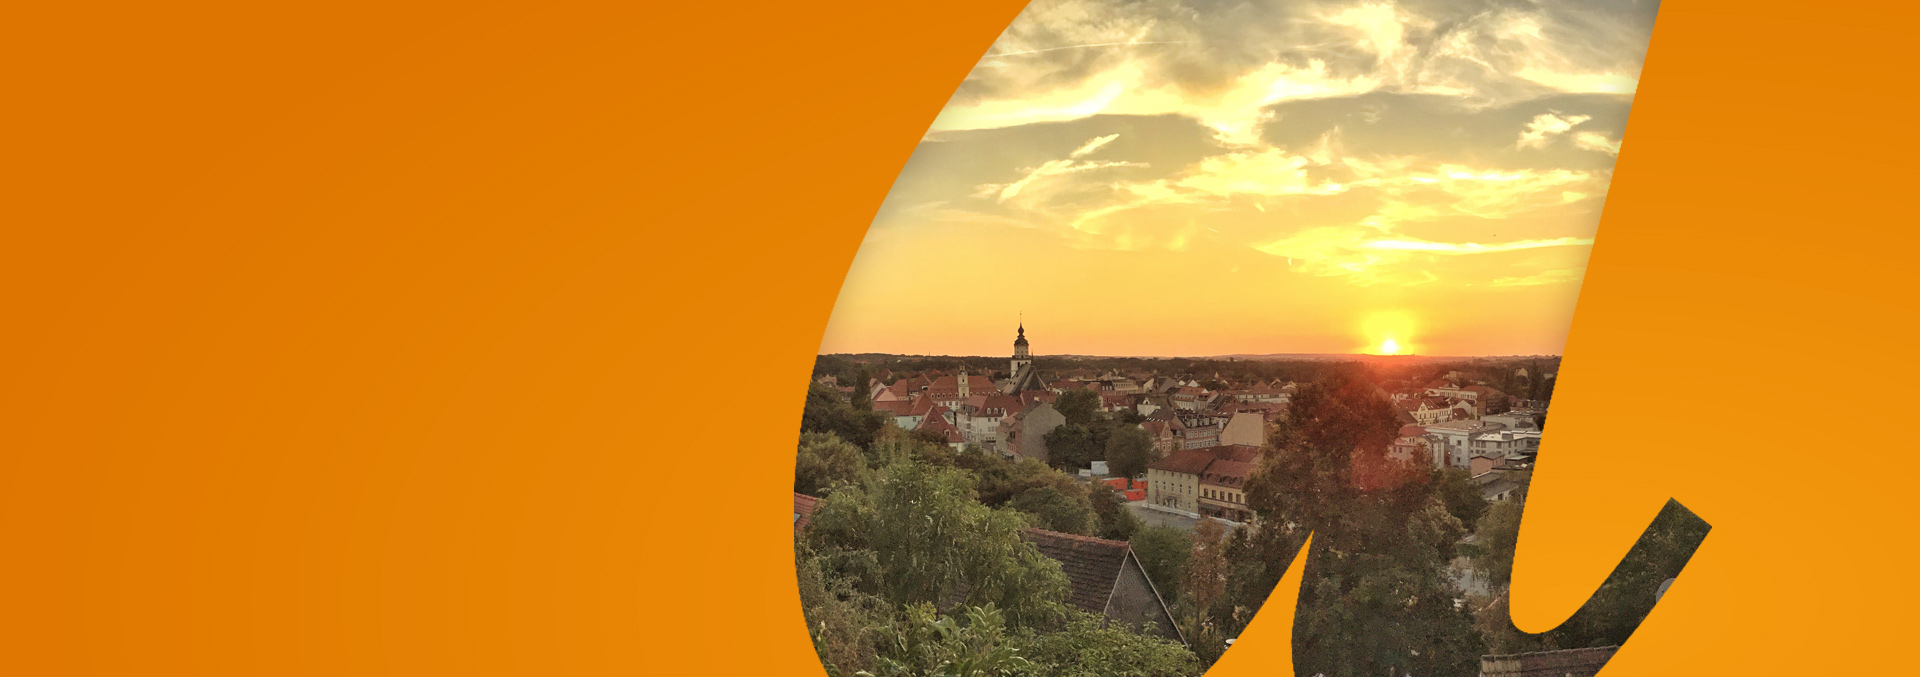 Panorama gegen den Sonnenuntergang über Weißenfels, dem Standort einer unserer Einrichtungen und des ambulanten Pflegedienstes avendi-mobil.